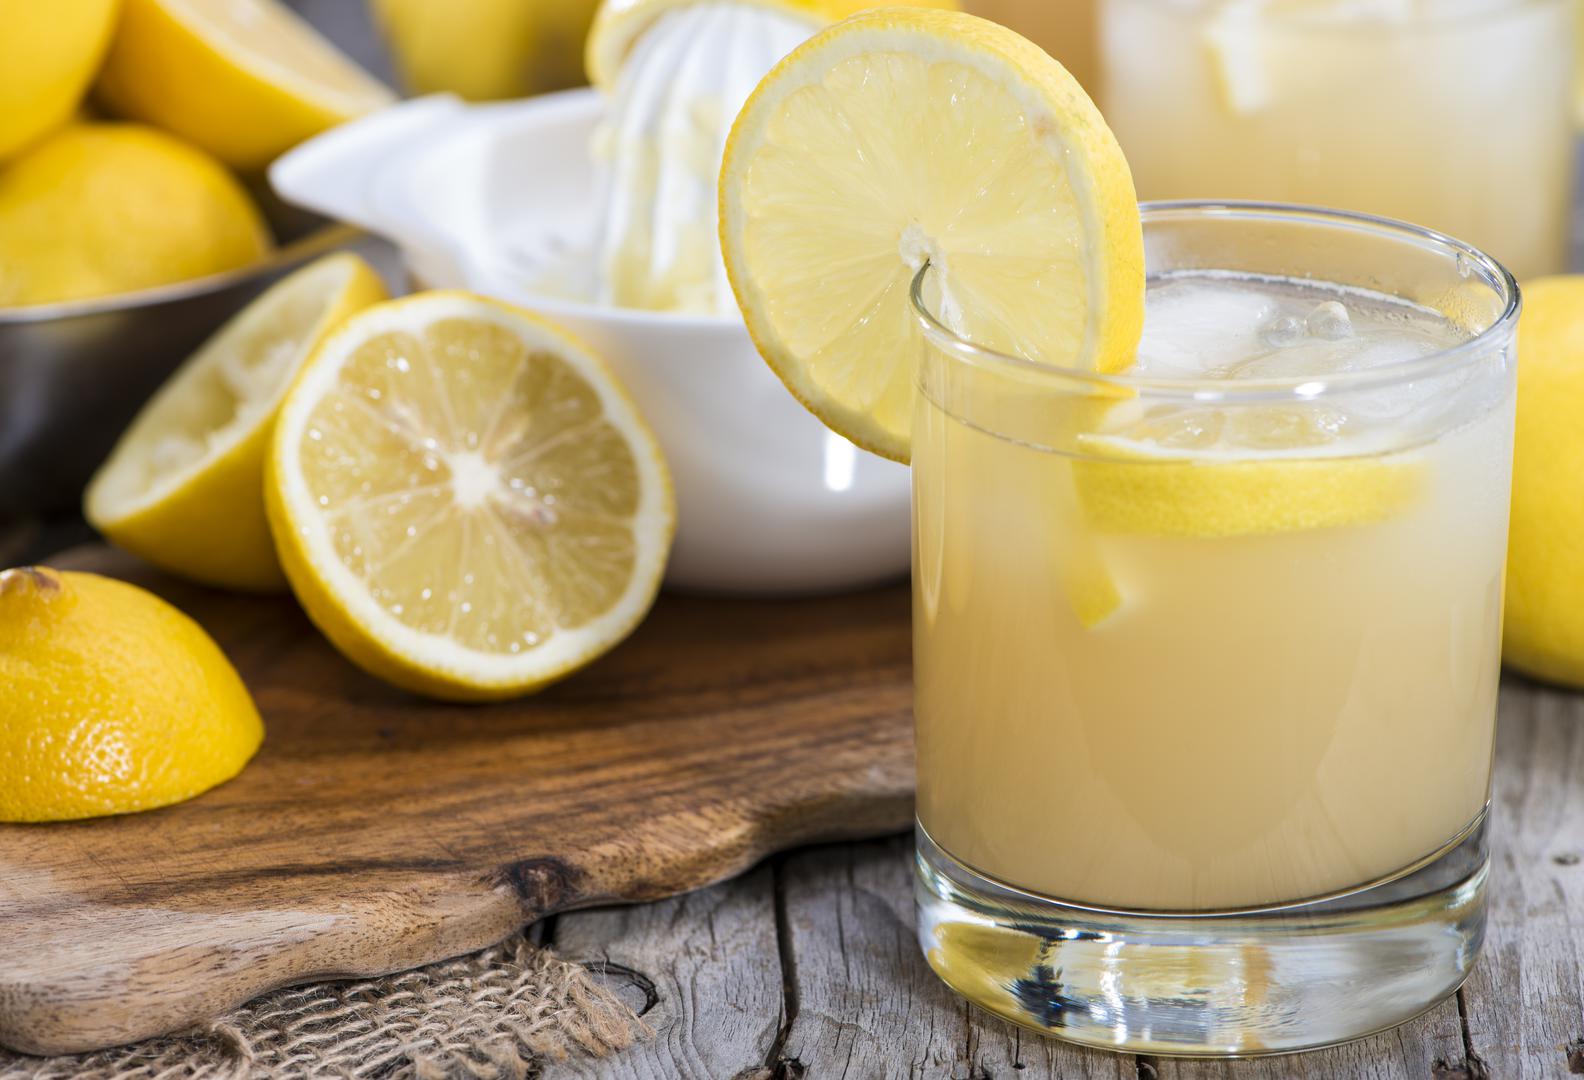 SOK LIMUNA. Ako vam se javi velika migrena iscijedite sok limuna u čašu, zajedno sa dvije žlice soli i popijte taj magičan napitak koji će vas vrlo brzo riješiti upale i migrene. 